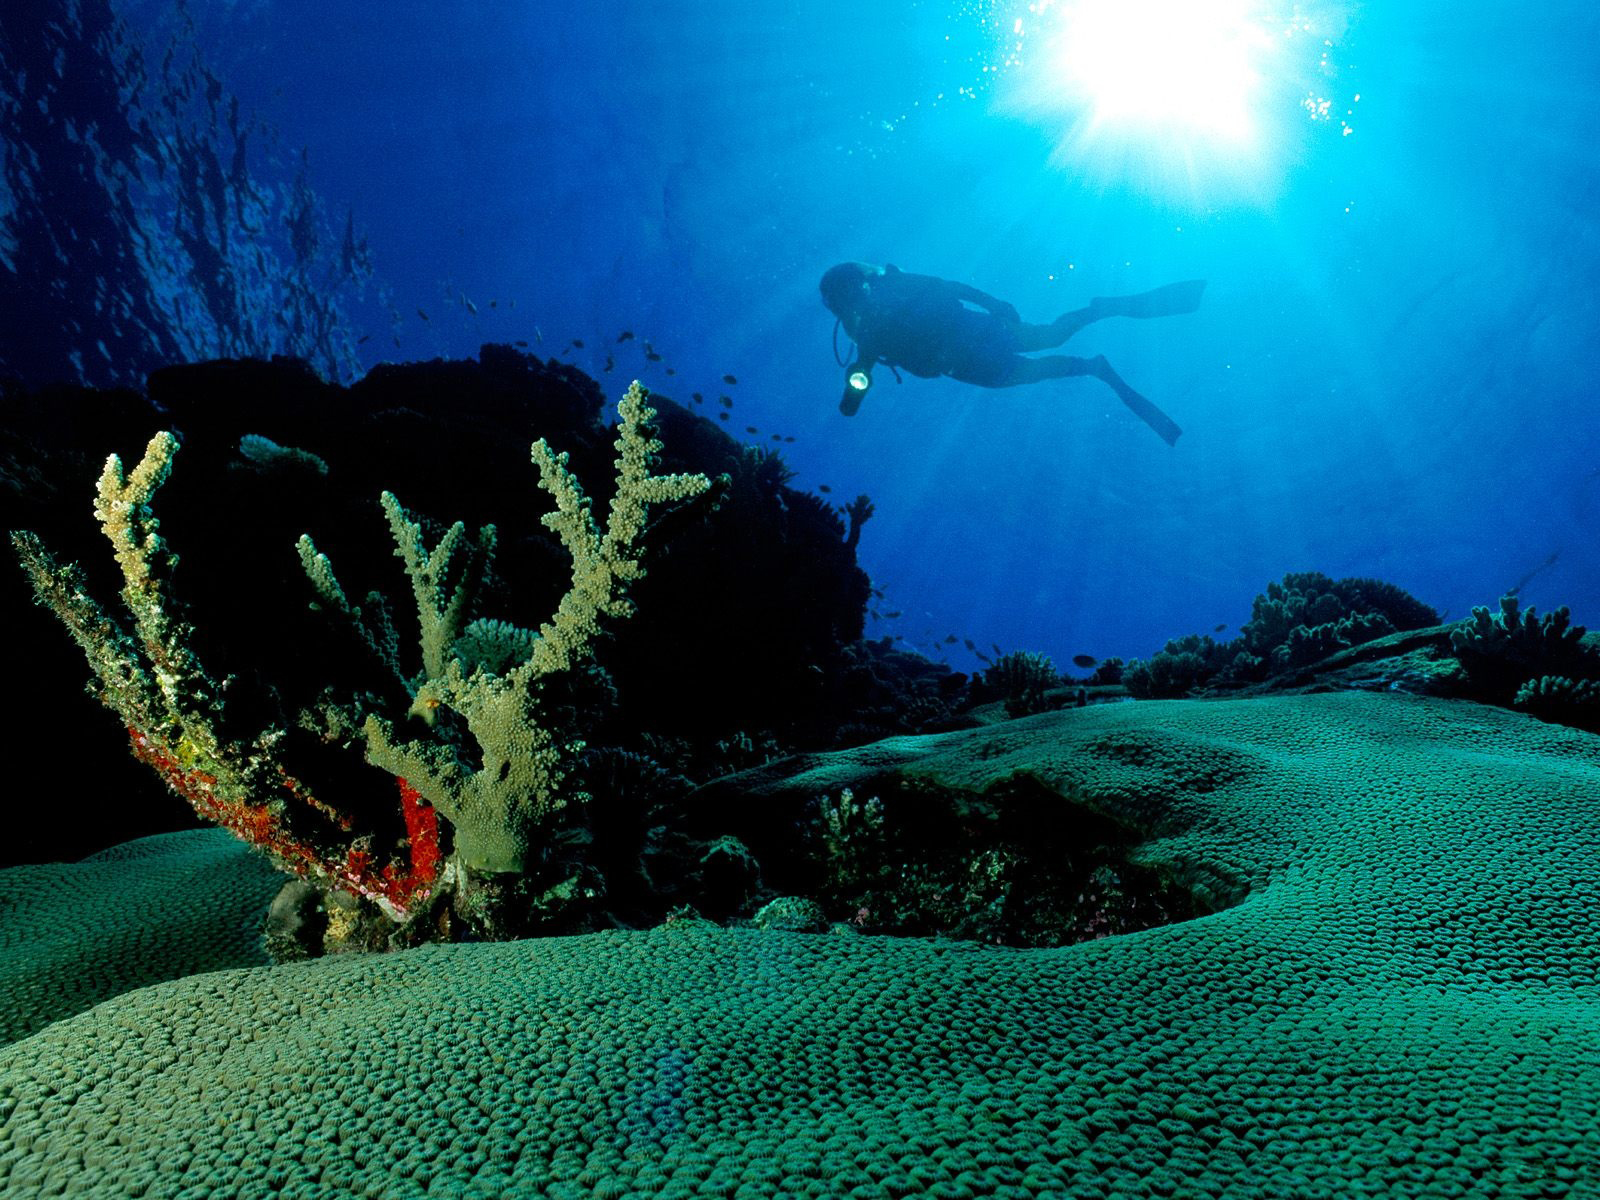 underwater hd wallpaper,underwater,marine biology,reef,organism,coral reef